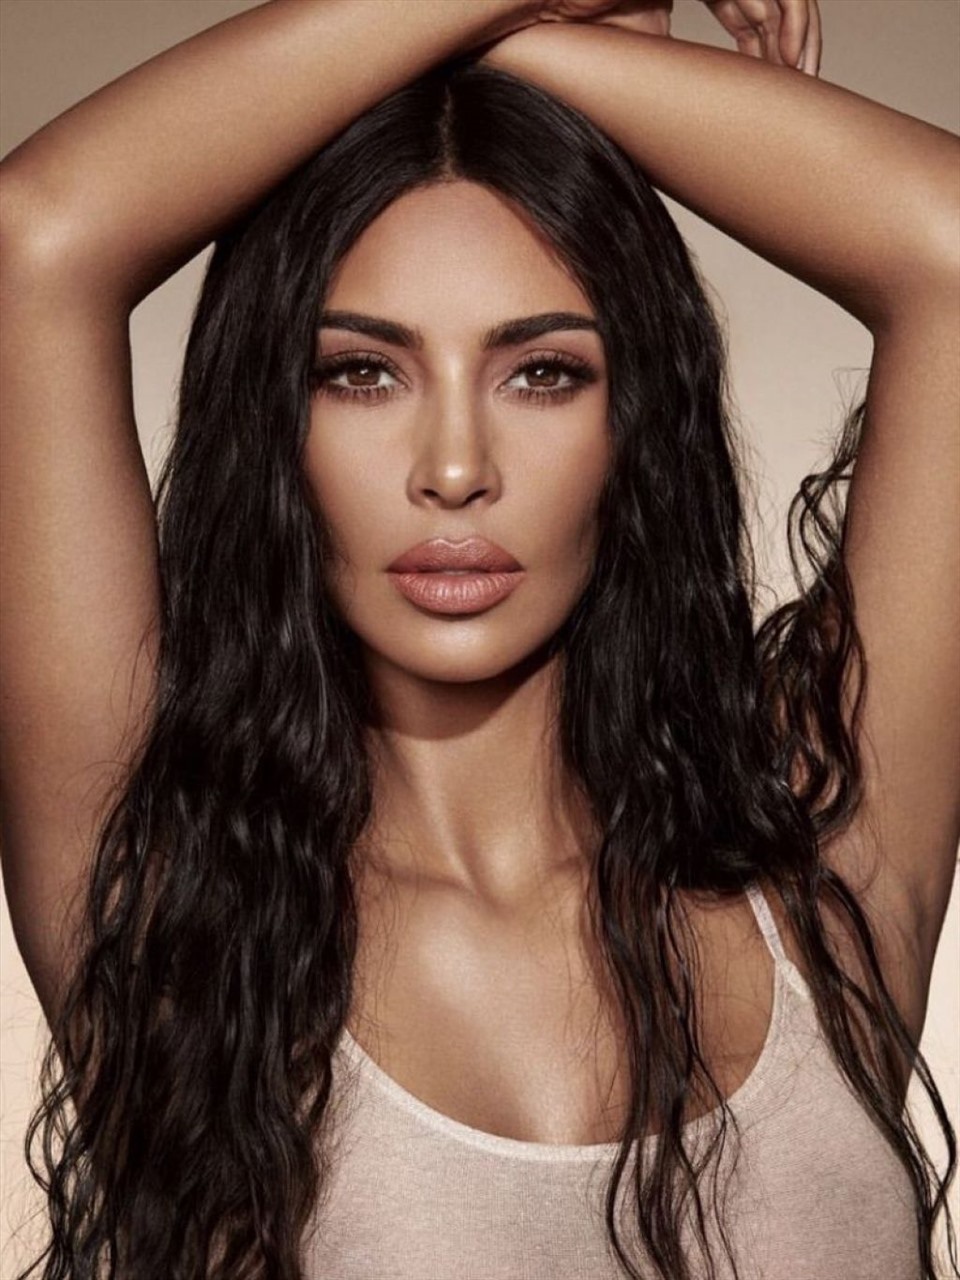 Nữ tỷ phú Kim Kardashian: Tắc kè hoa chỉ chấp nhận màu trắng trong nhà - 7